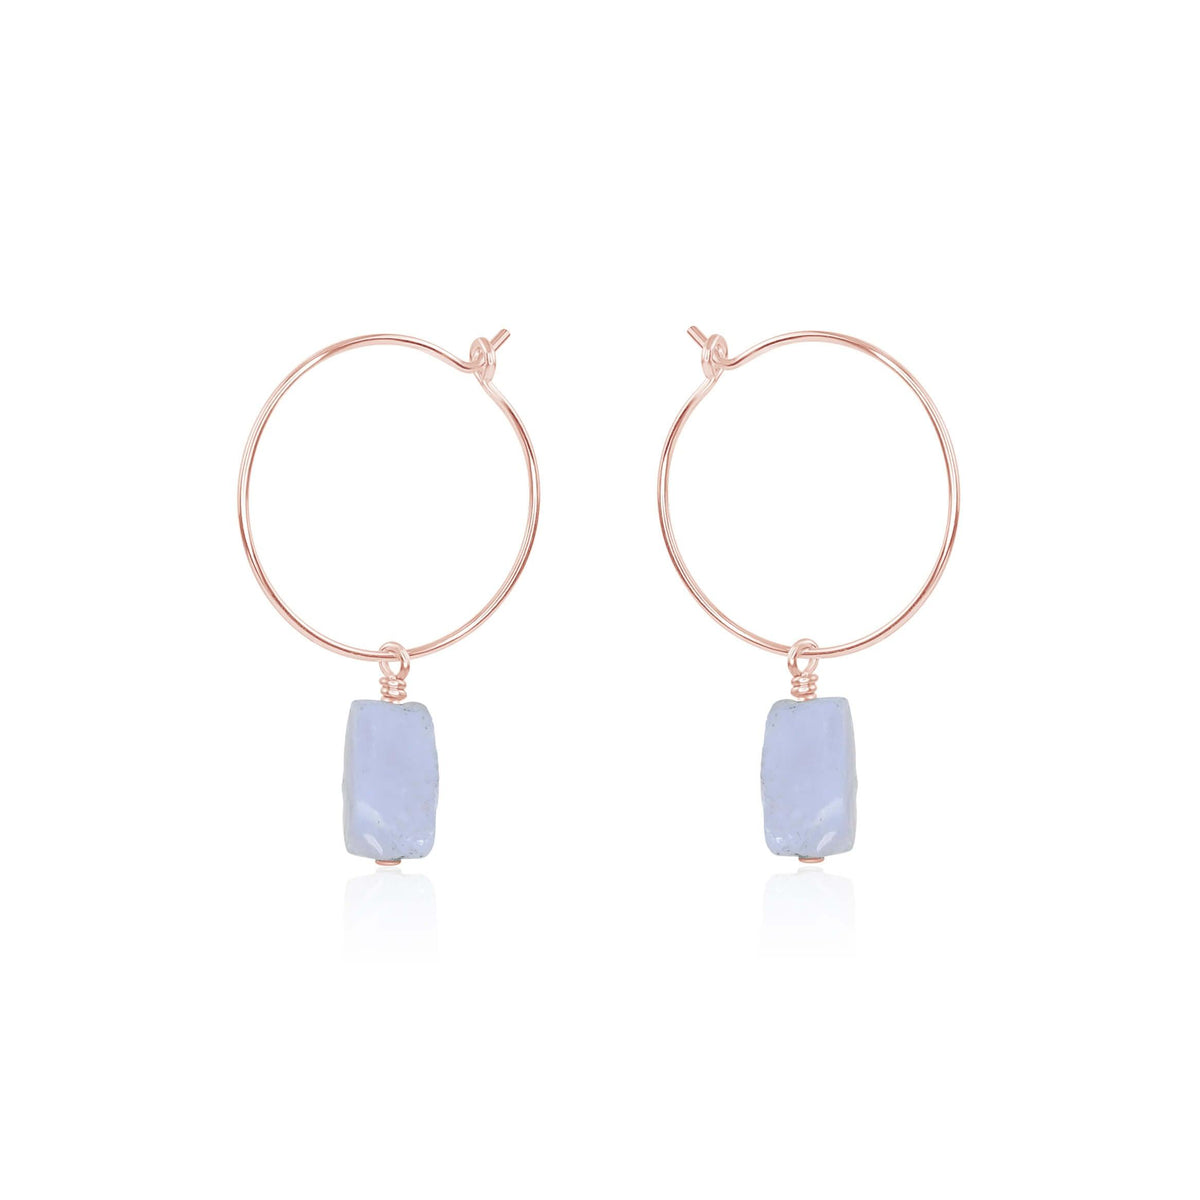 Raw Nugget Hoop Earrings - Blue Lace Agate - 14K Rose Gold Fill - Luna Tide Handmade Jewellery